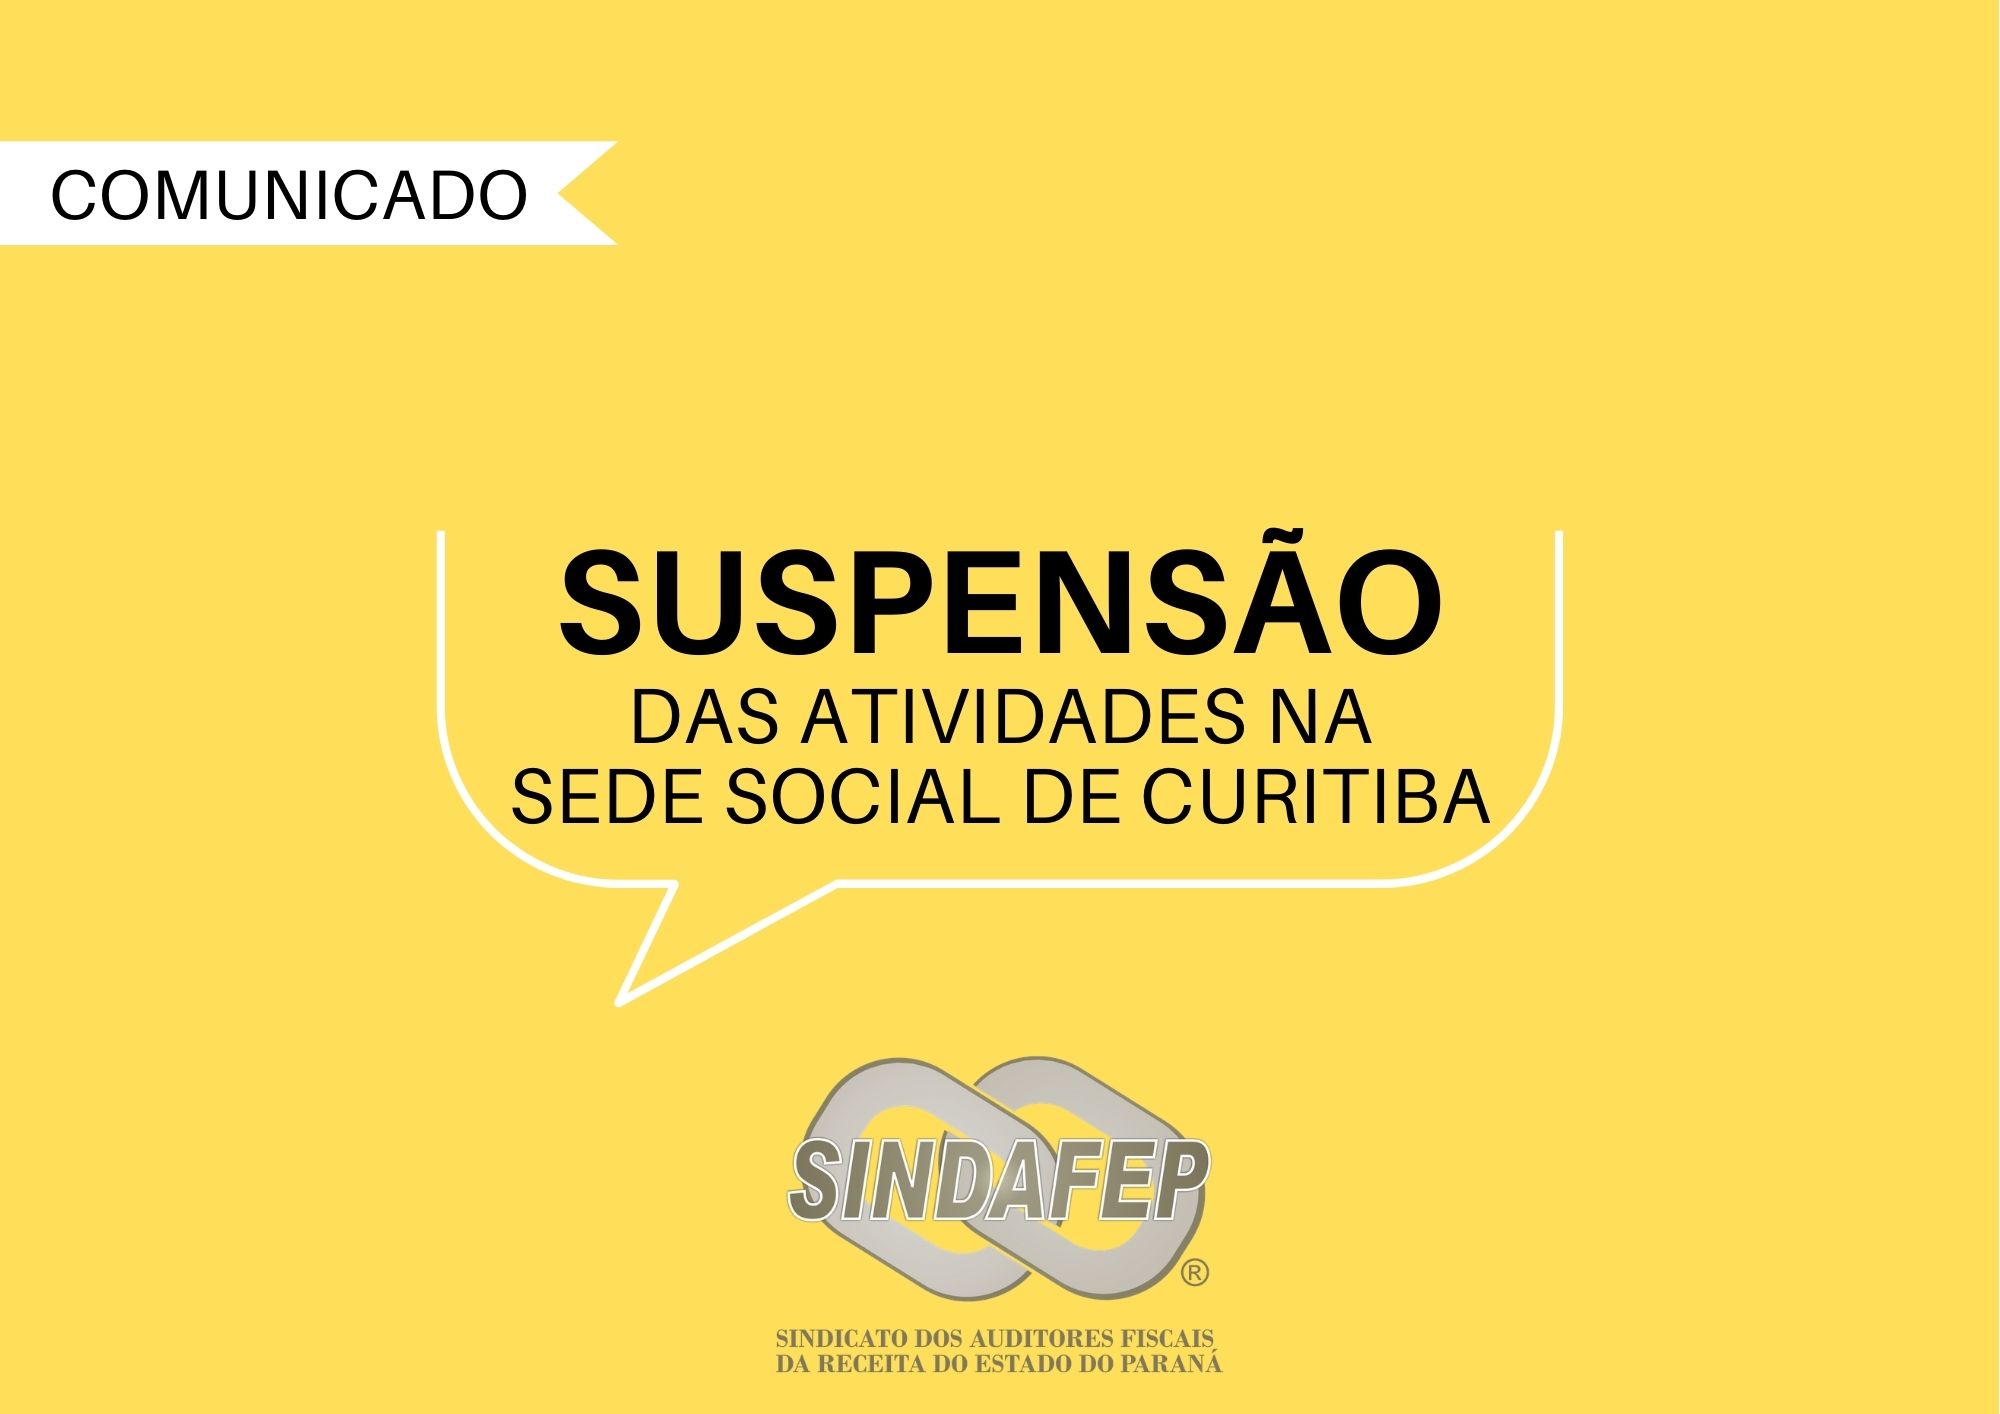 Sindafep cancela atividades presenciais na sede social de Curitiba por 31 dias